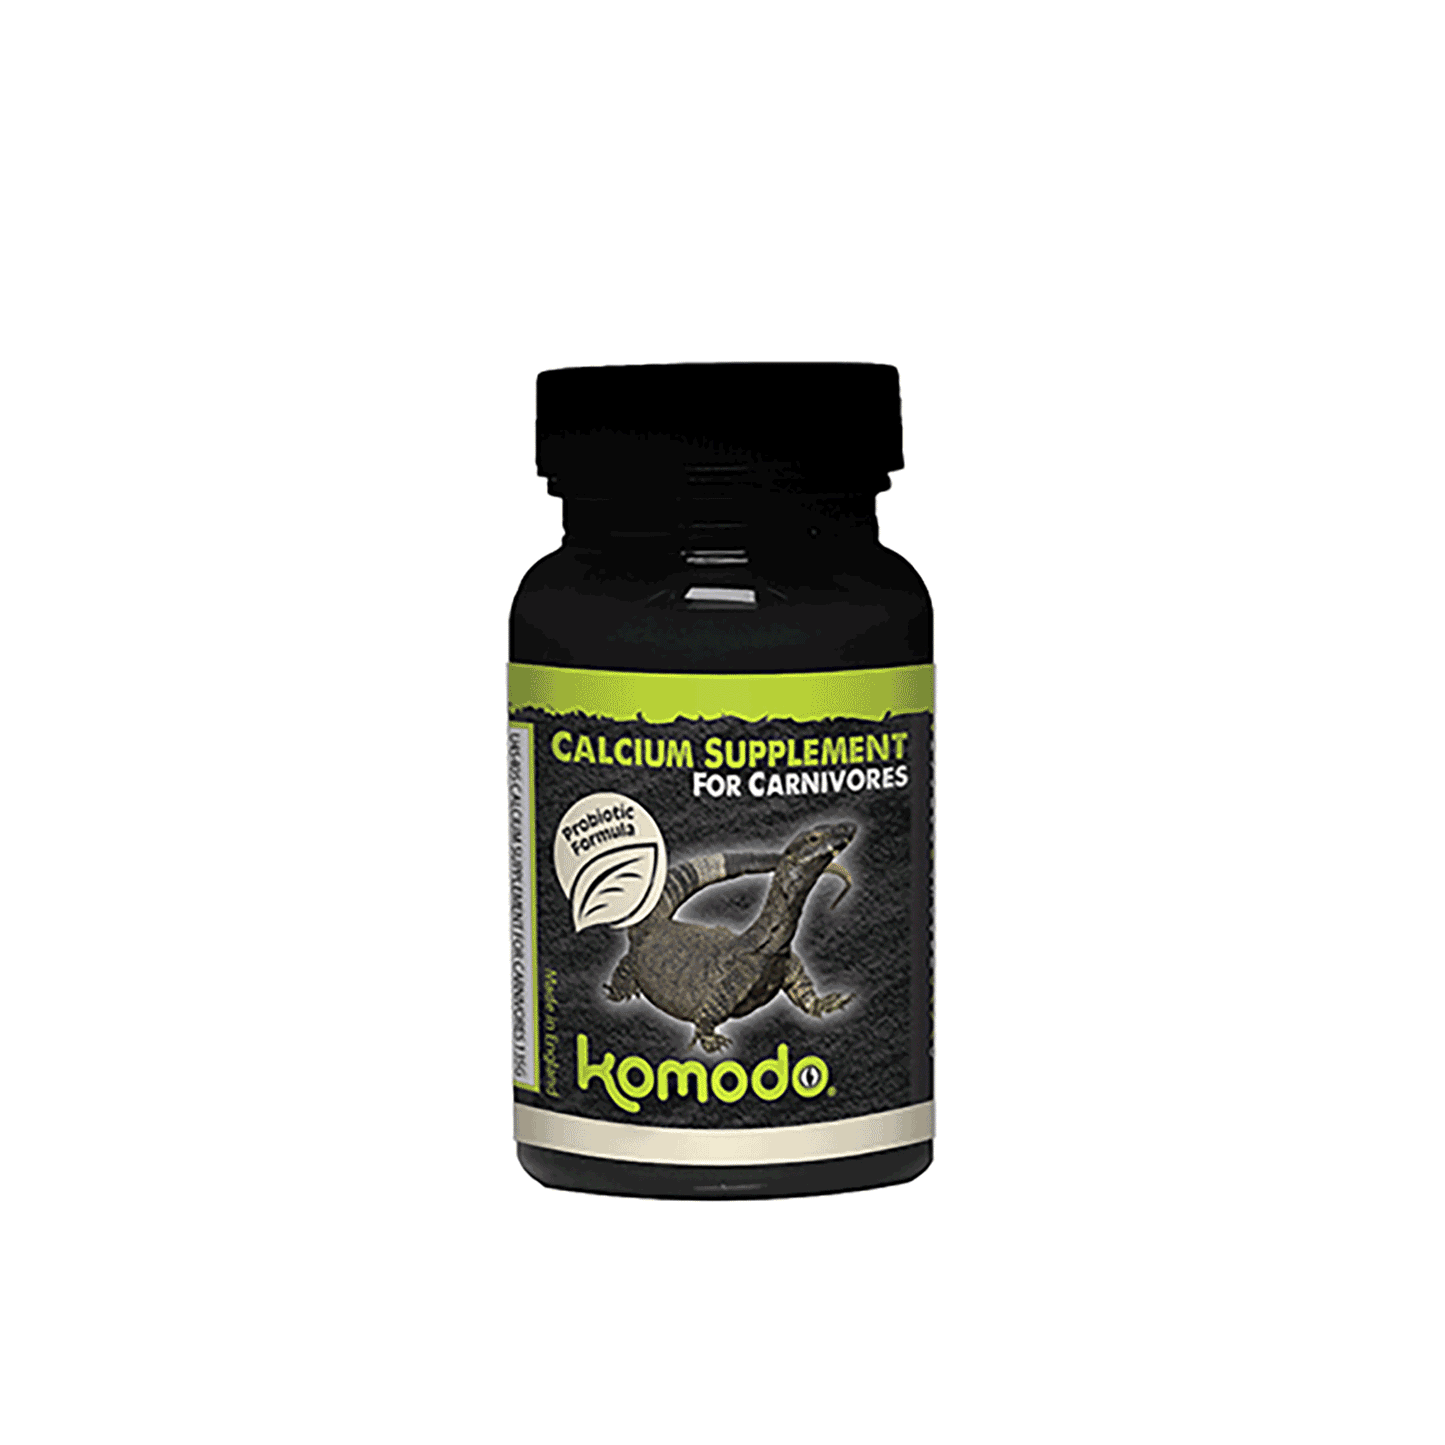 Komodo Calcium Supplement For Carnivores 135g